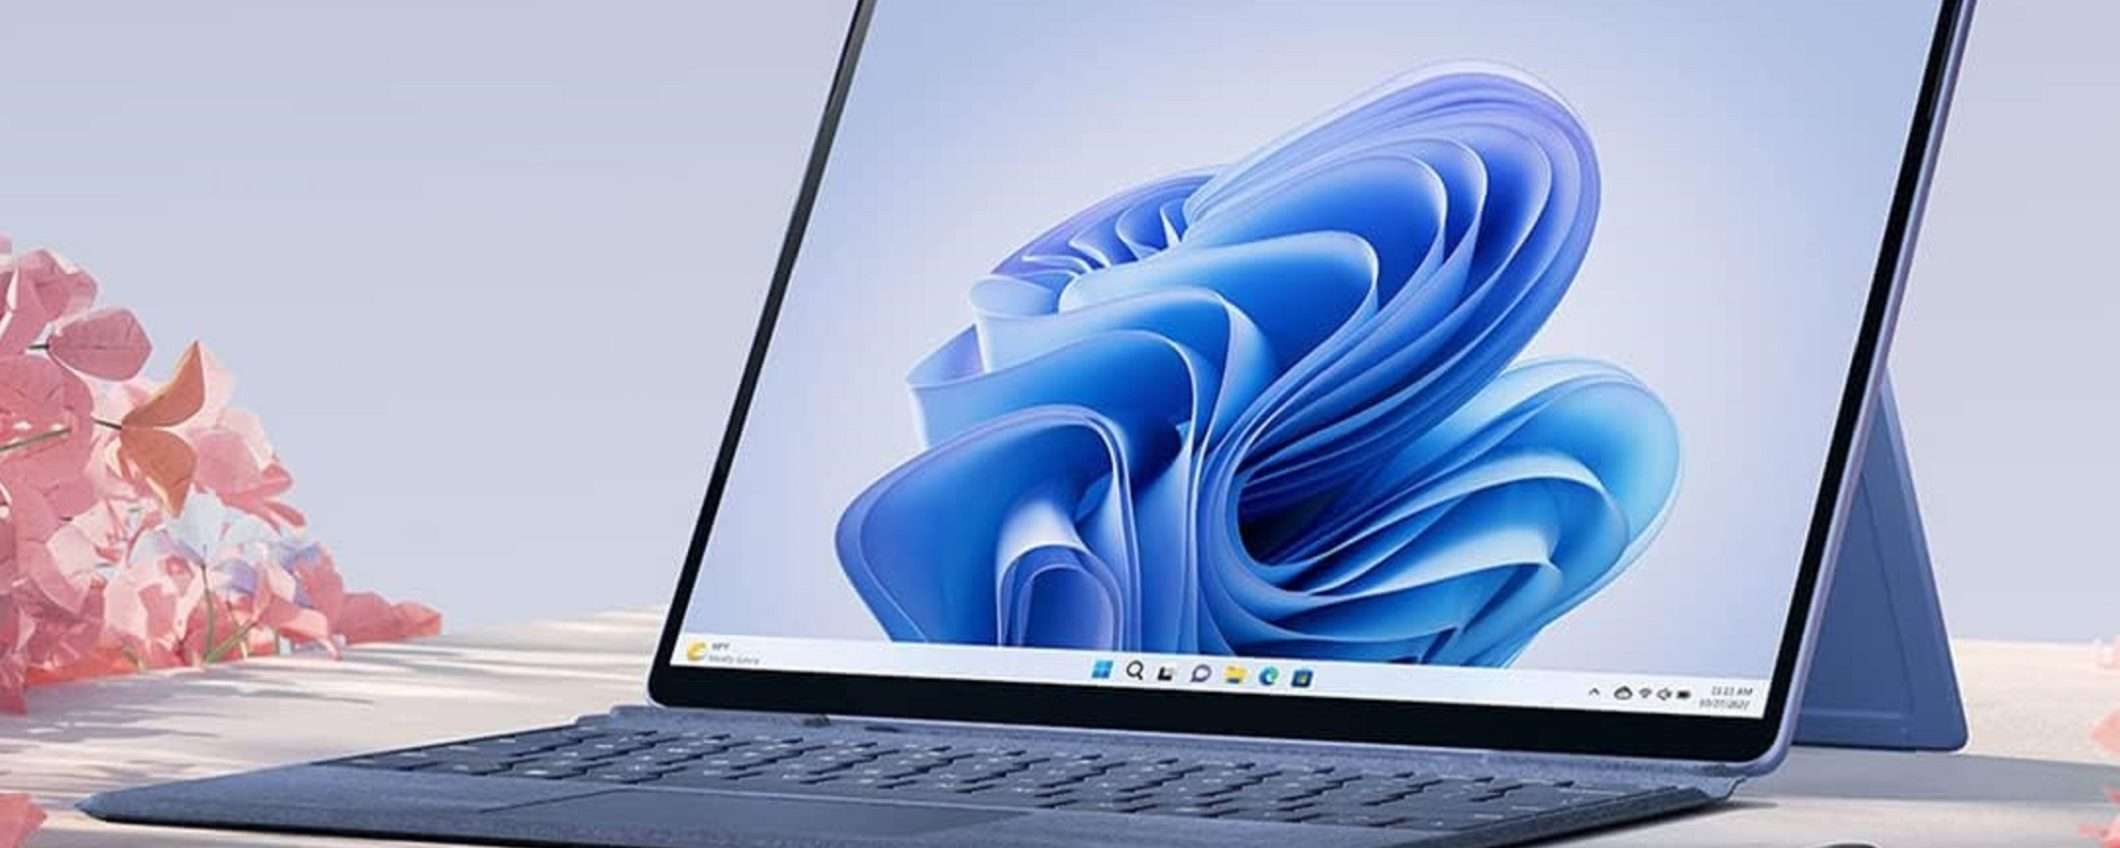 Microsoft Surface Pro 9: Intel i5 12esima generazione e 8/256GB a 400€ in meno